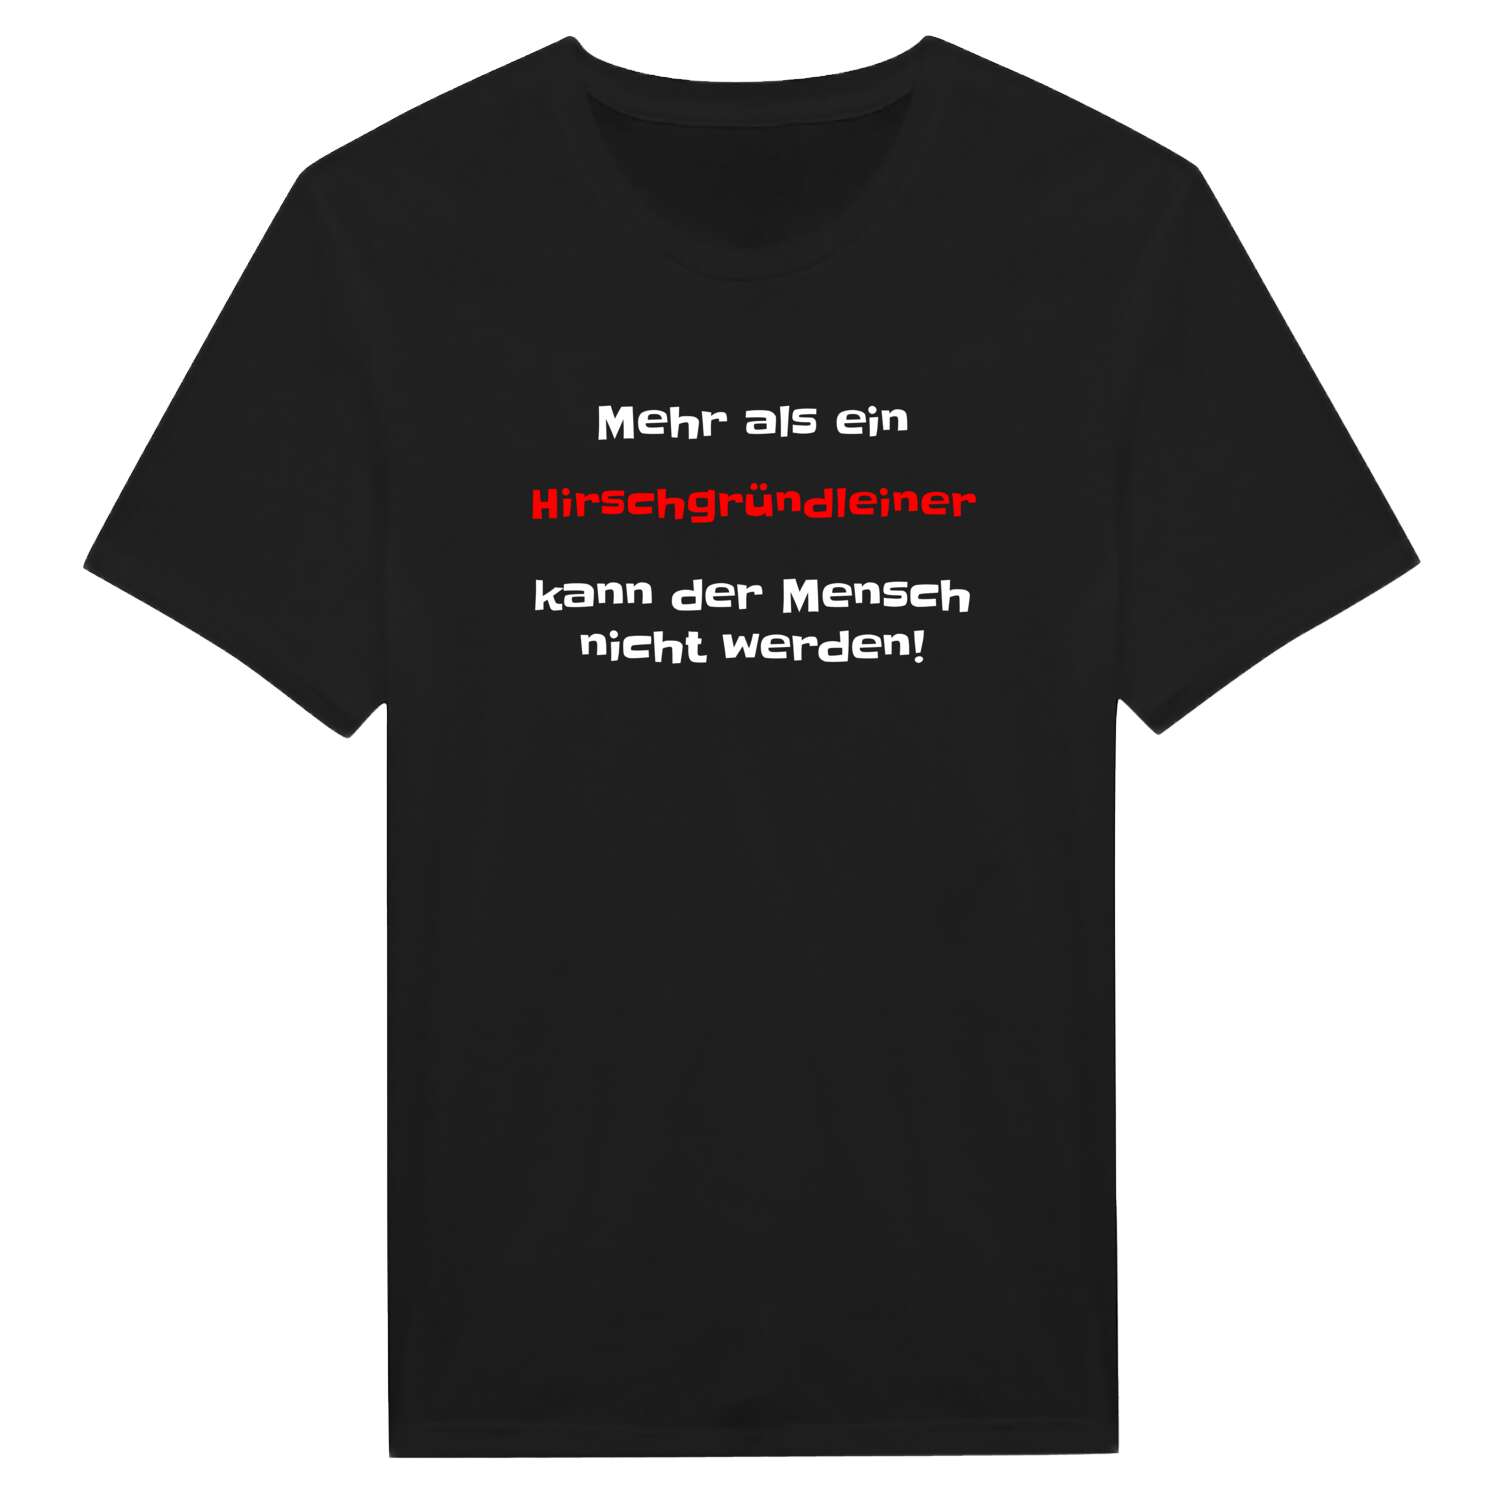 Hirschgründlein T-Shirt »Mehr als ein«